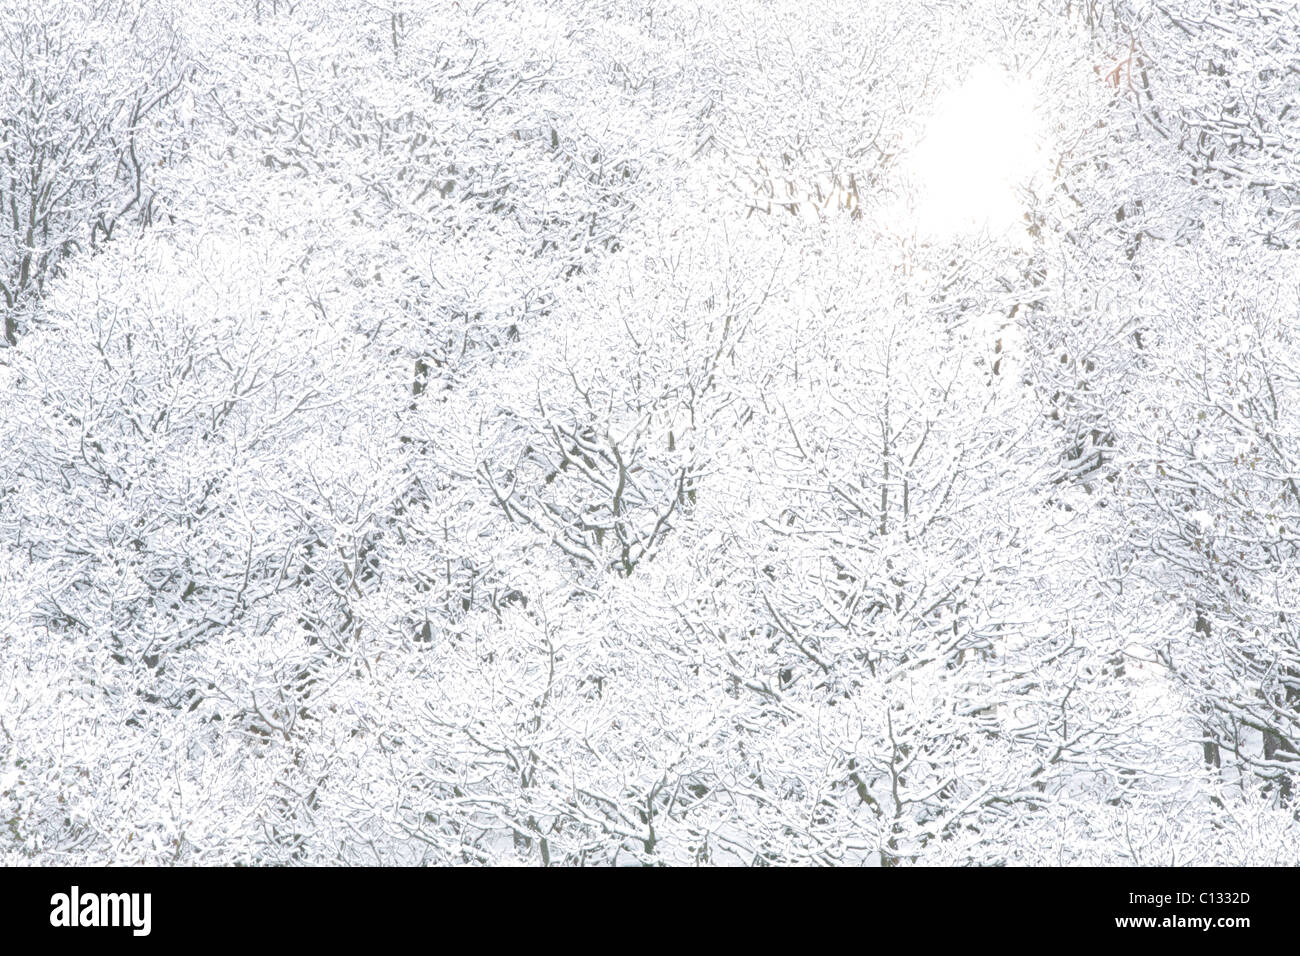 Chêne sessile (Quercus petraea) lors d'une forte chute de neige. Powys, Pays de Galles. Novembre. Banque D'Images